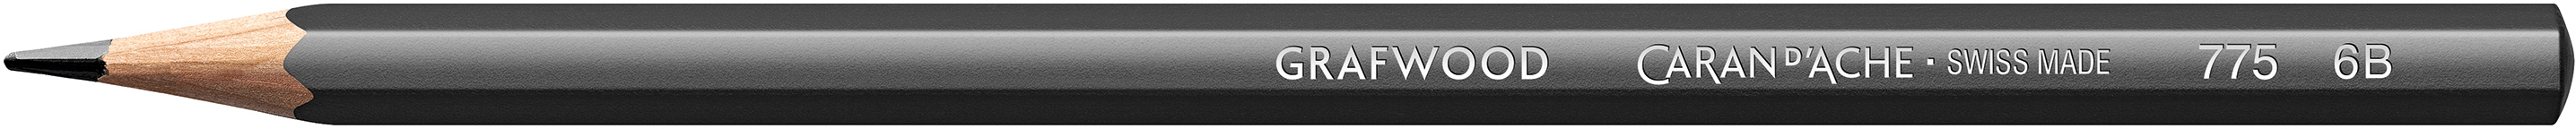 CARAN D'ACHE Crayon Grafwood 6B 775.256